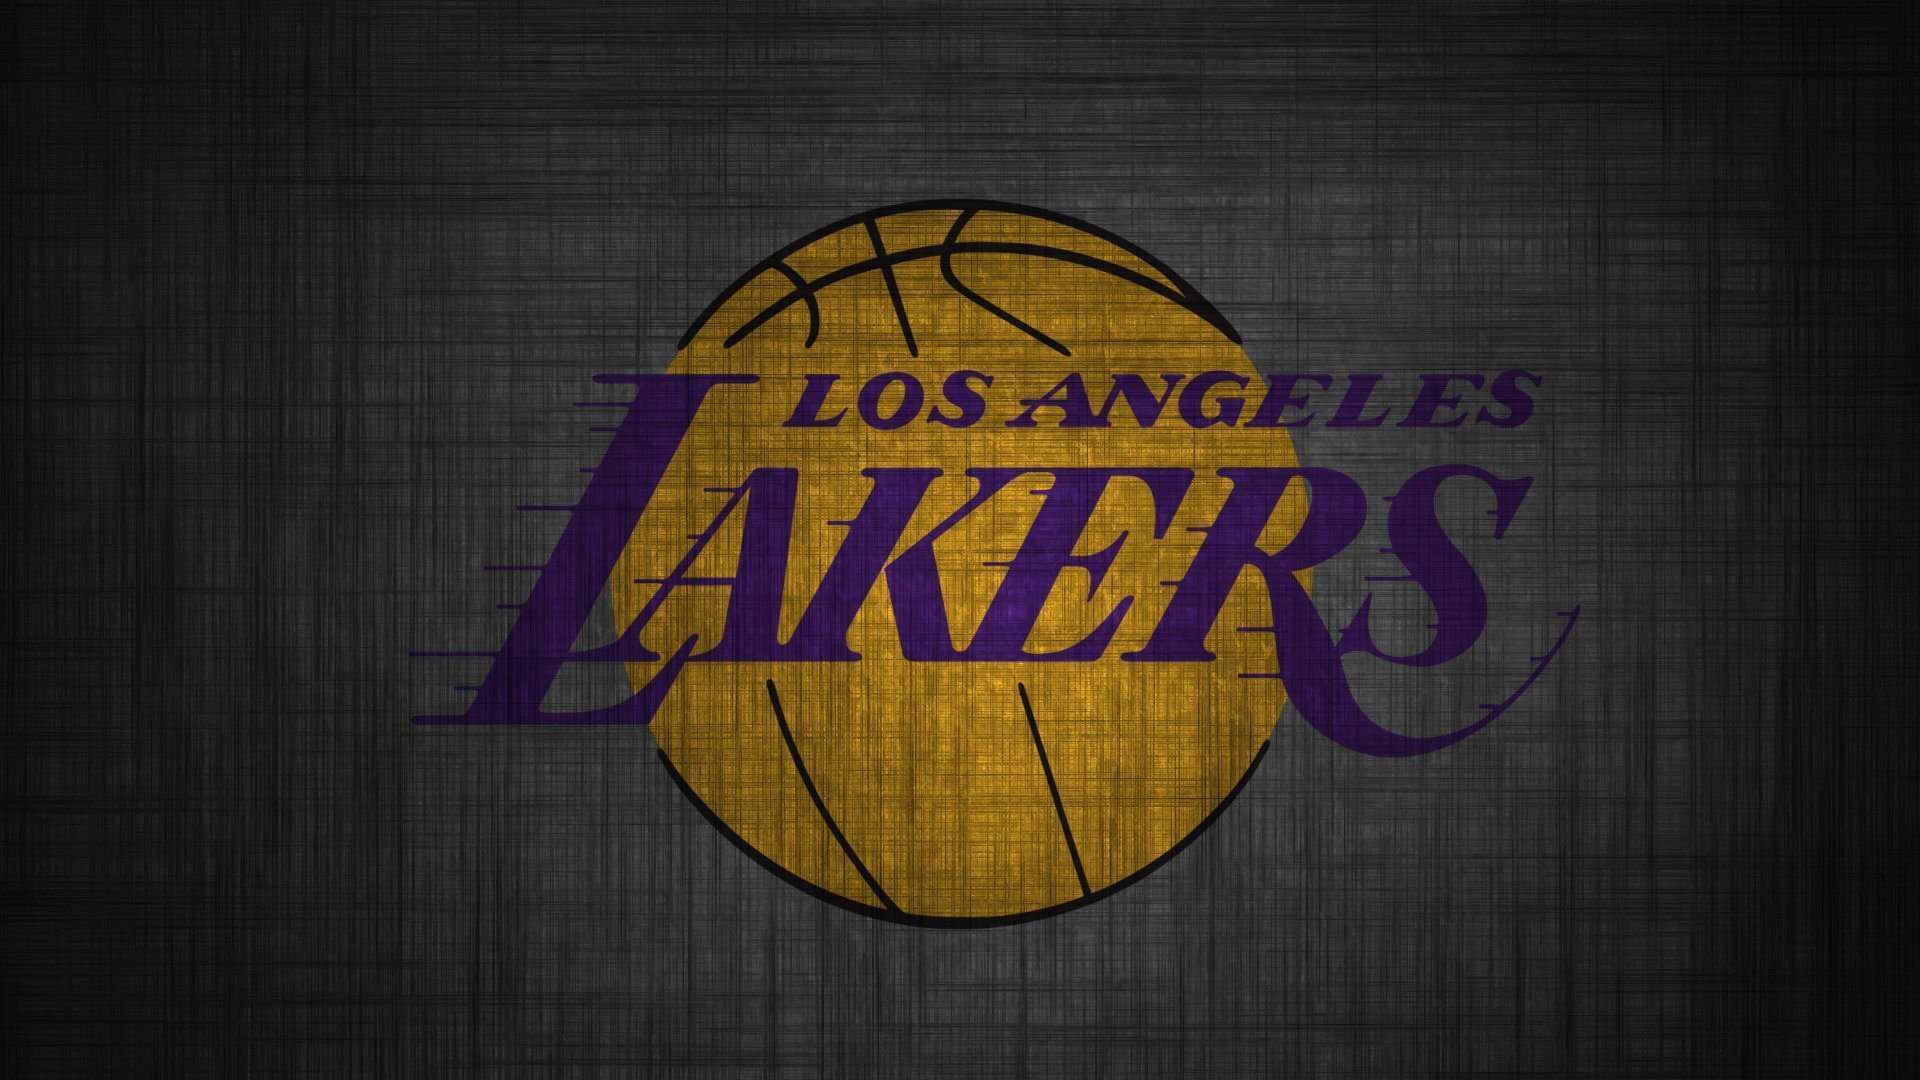 43+] Lakers Wallpaper for iPhone - WallpaperSafari